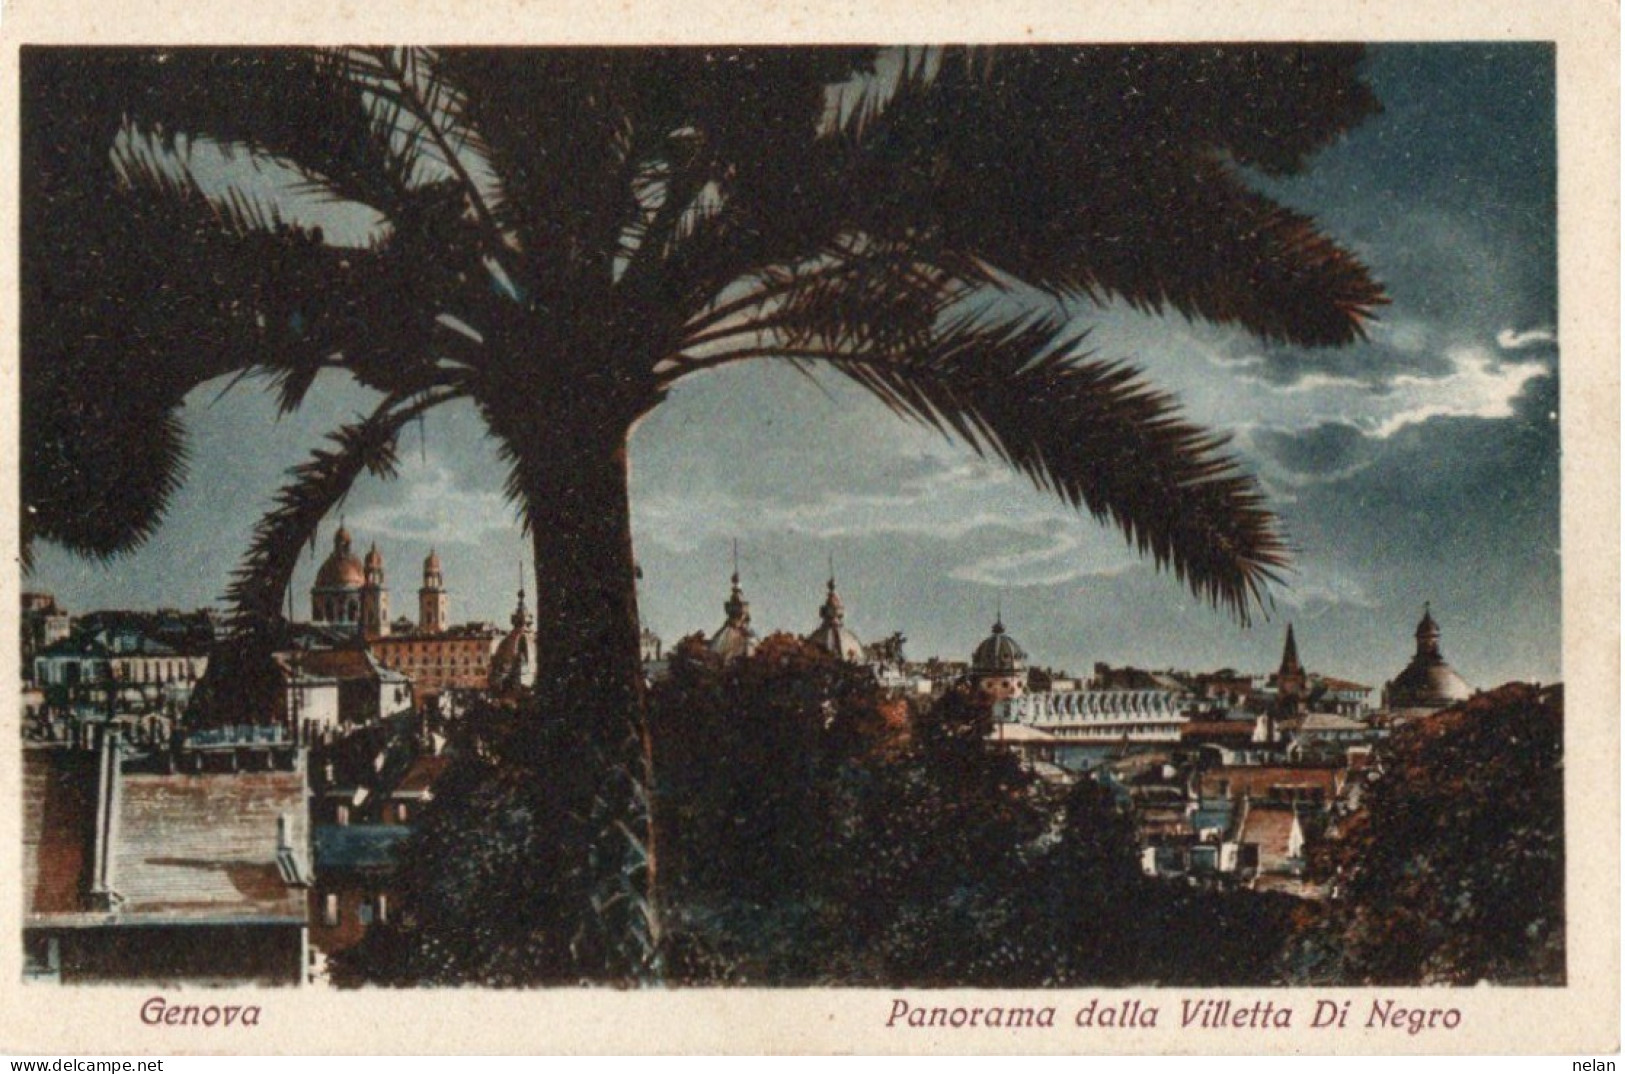 GENOVA - PANORAMA DALLA VILLETTA DI NEGRO - F.P. - Genova (Genoa)